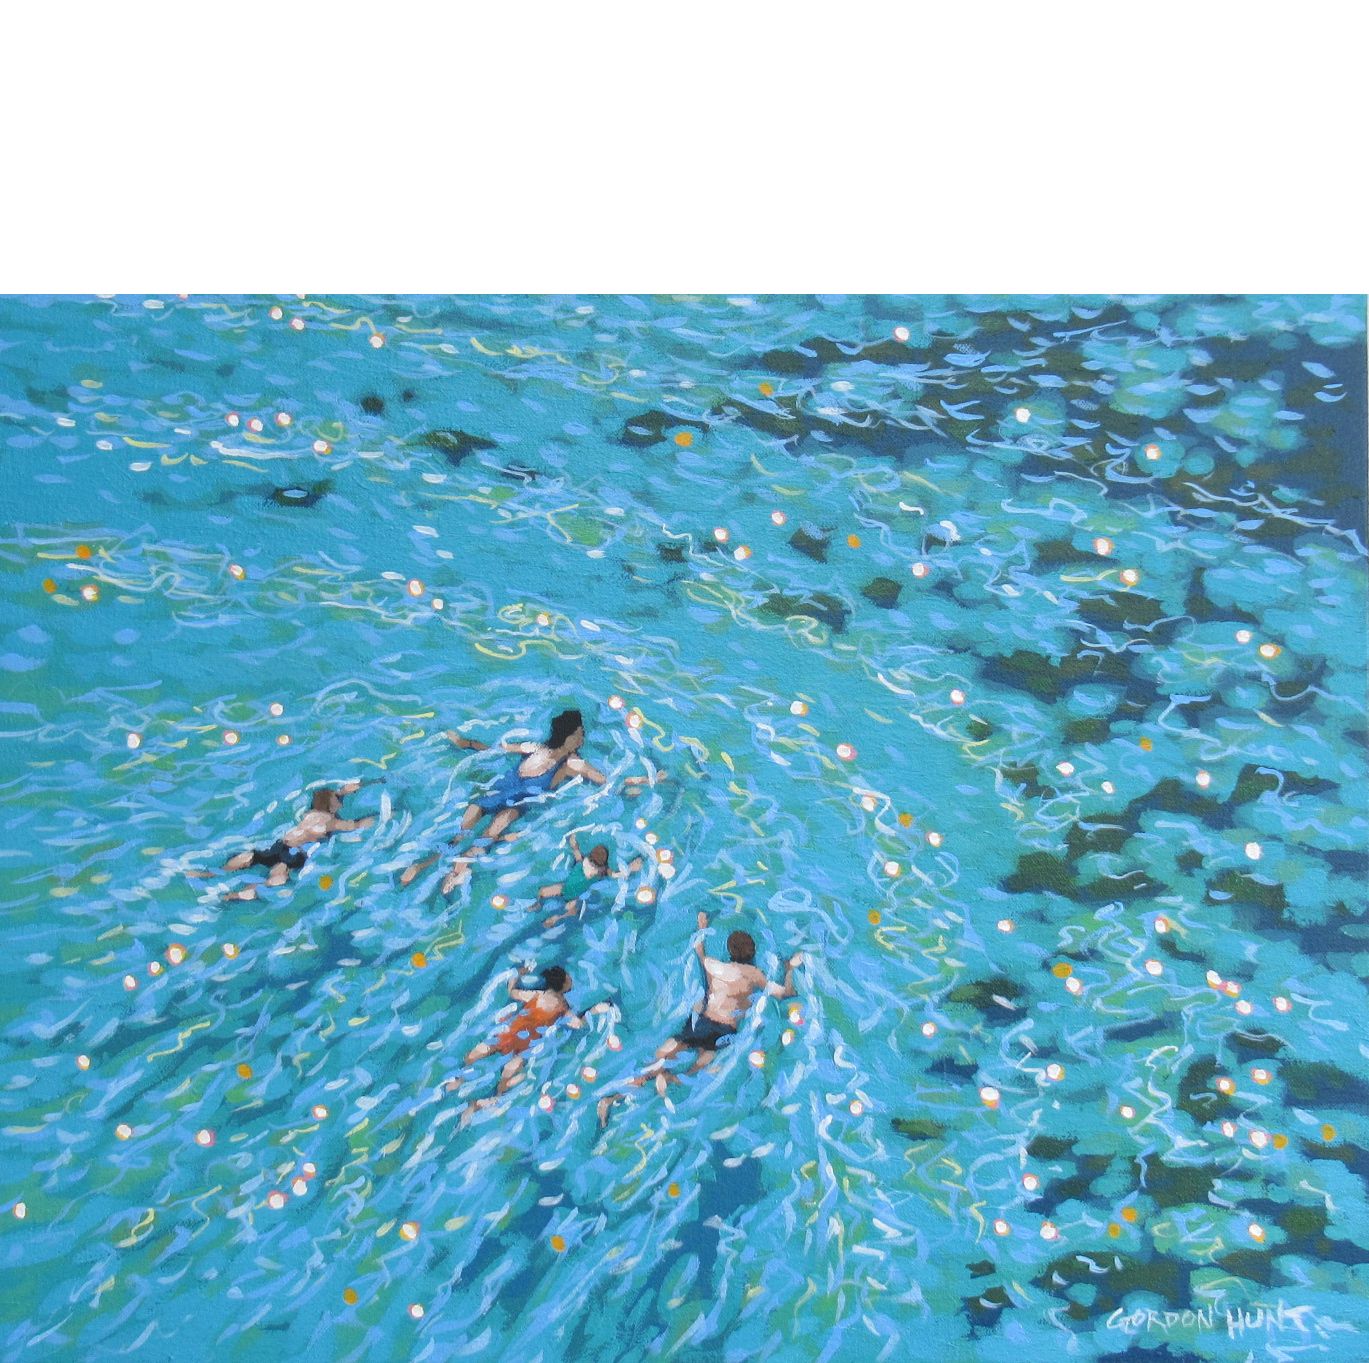 Family swim - wild swim by Gordon Hunt